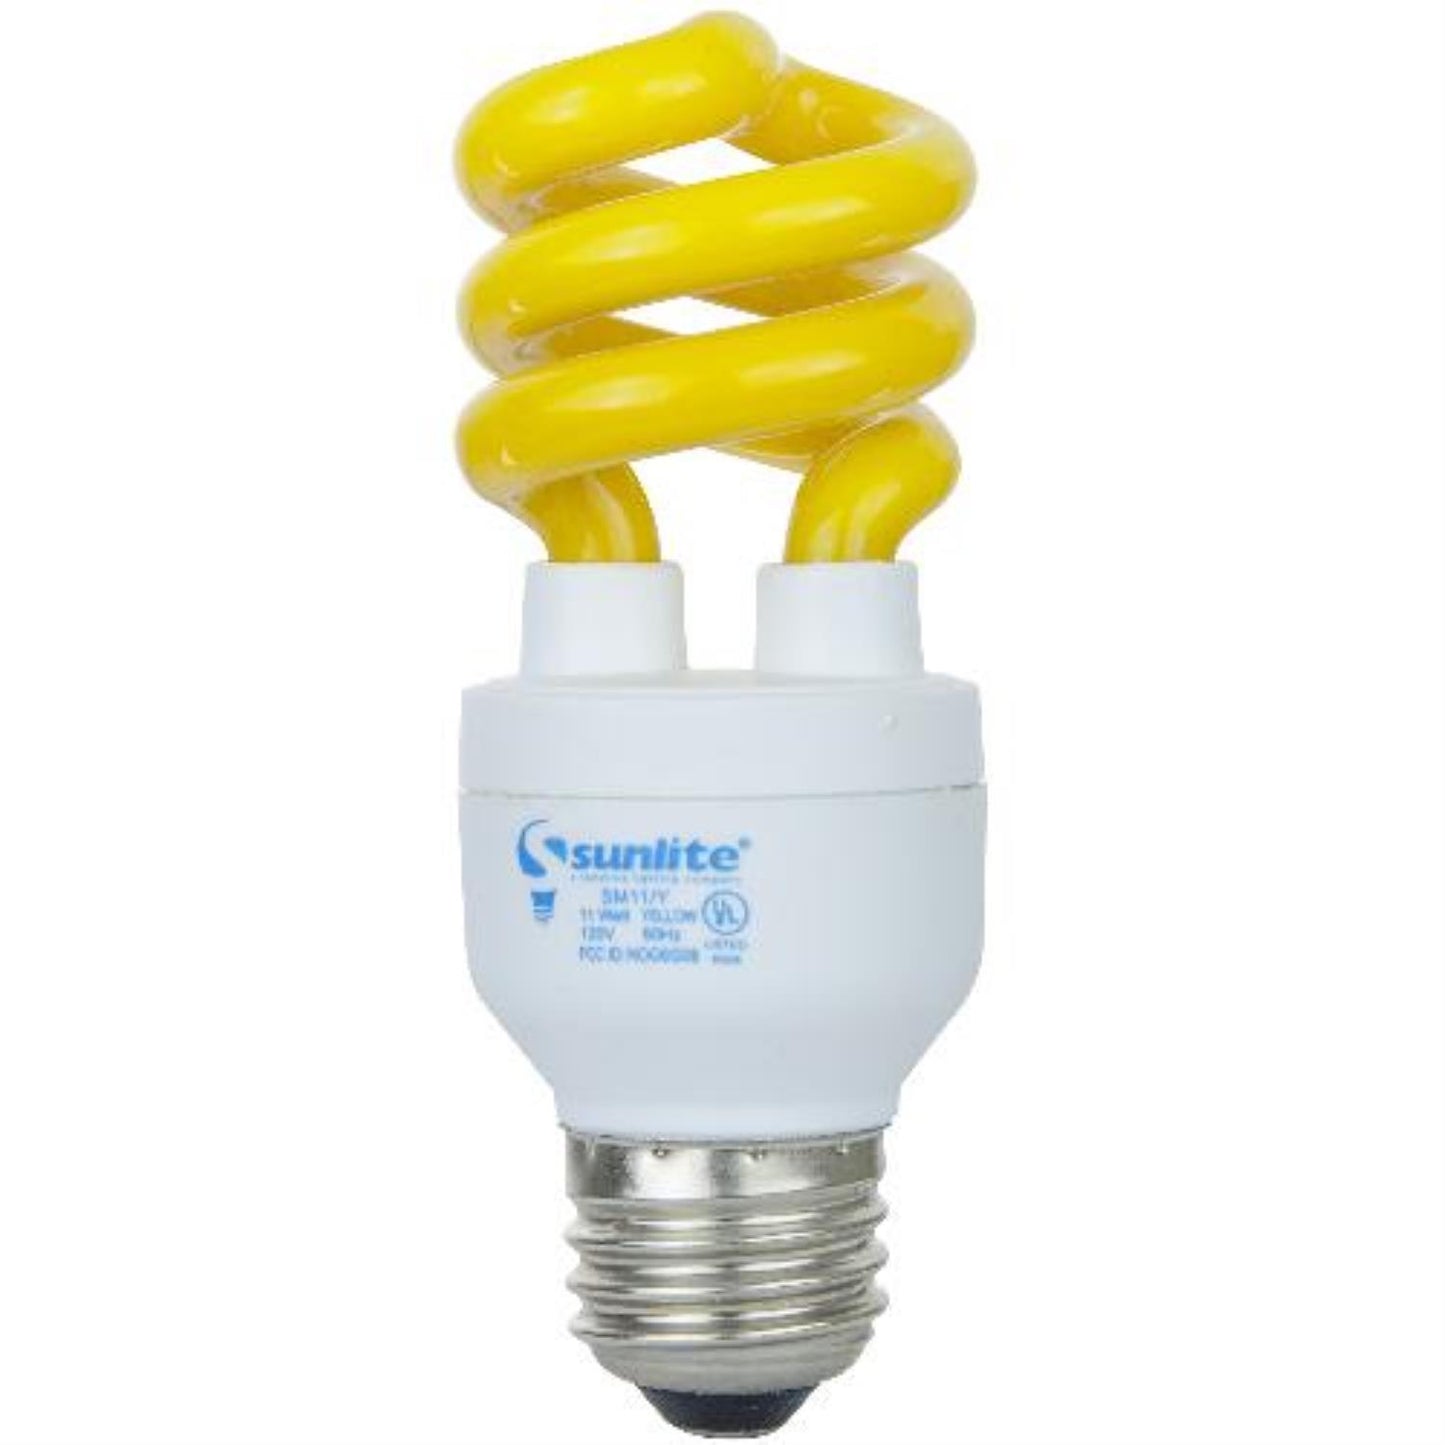 Sunlite 11 Watt Yellow Medium Base Spiral CFL Light Bulb